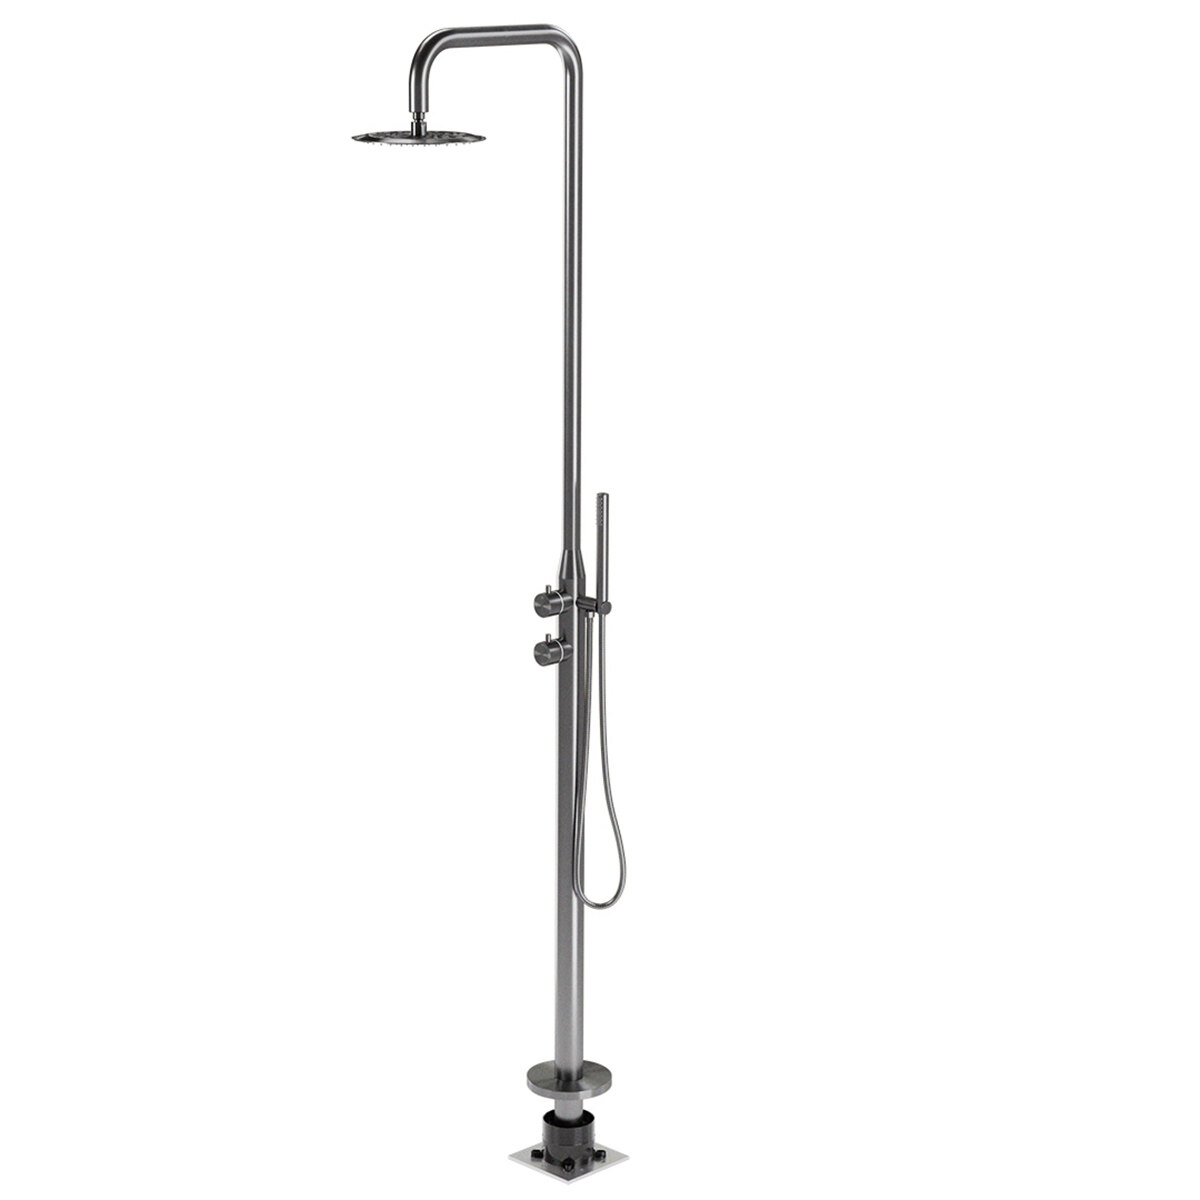 316 Stainless Steel Outdoor Faucet Bathtub Mixer Gun,shower mixer manufacturer supplier